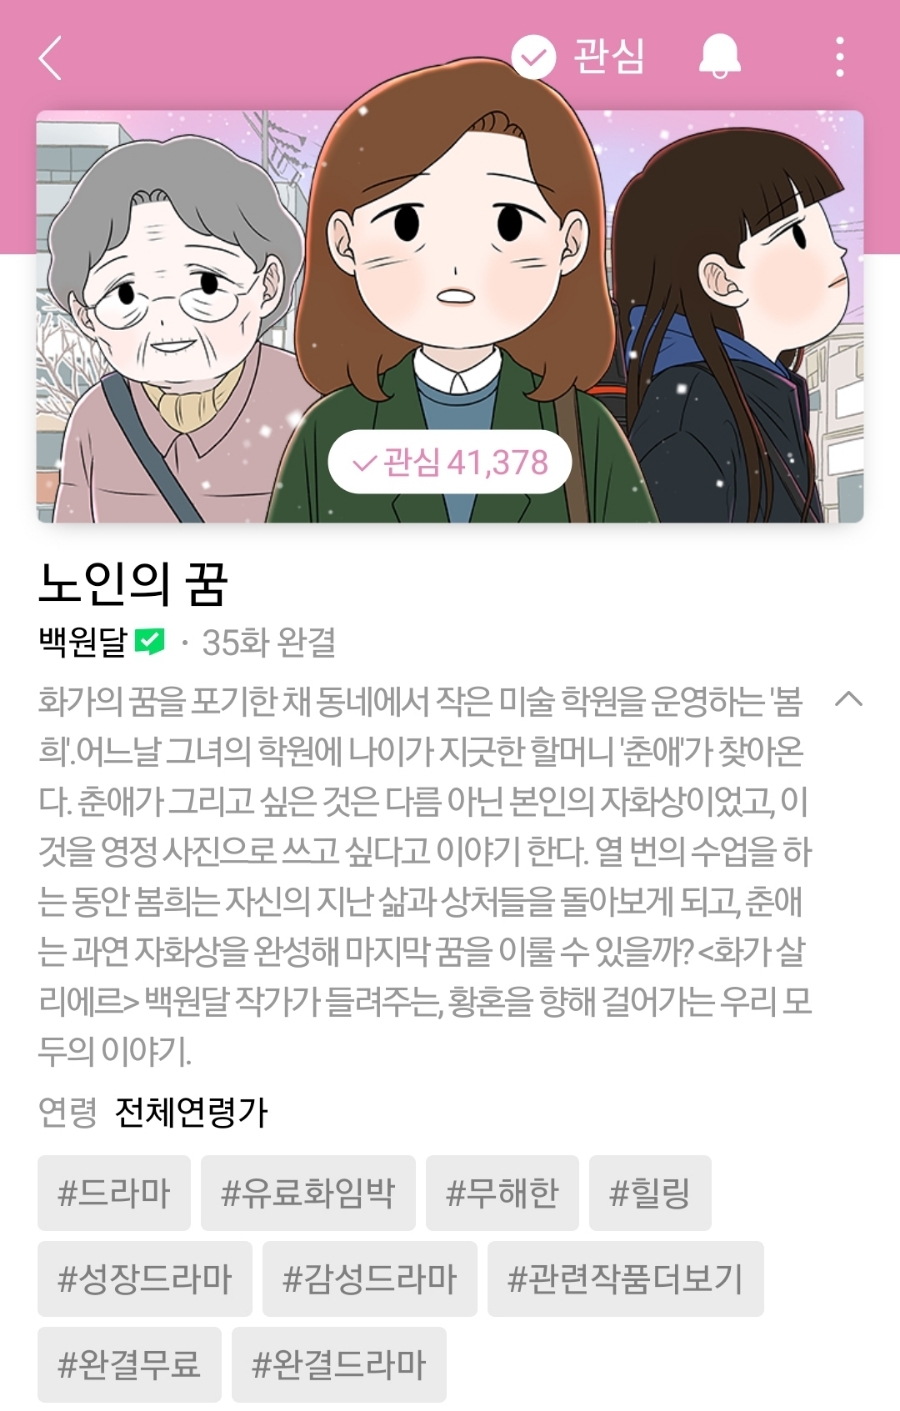 네이버 완결웹툰 추천 - 소장 욕구 뿜뿜한 '노인의 꿈'